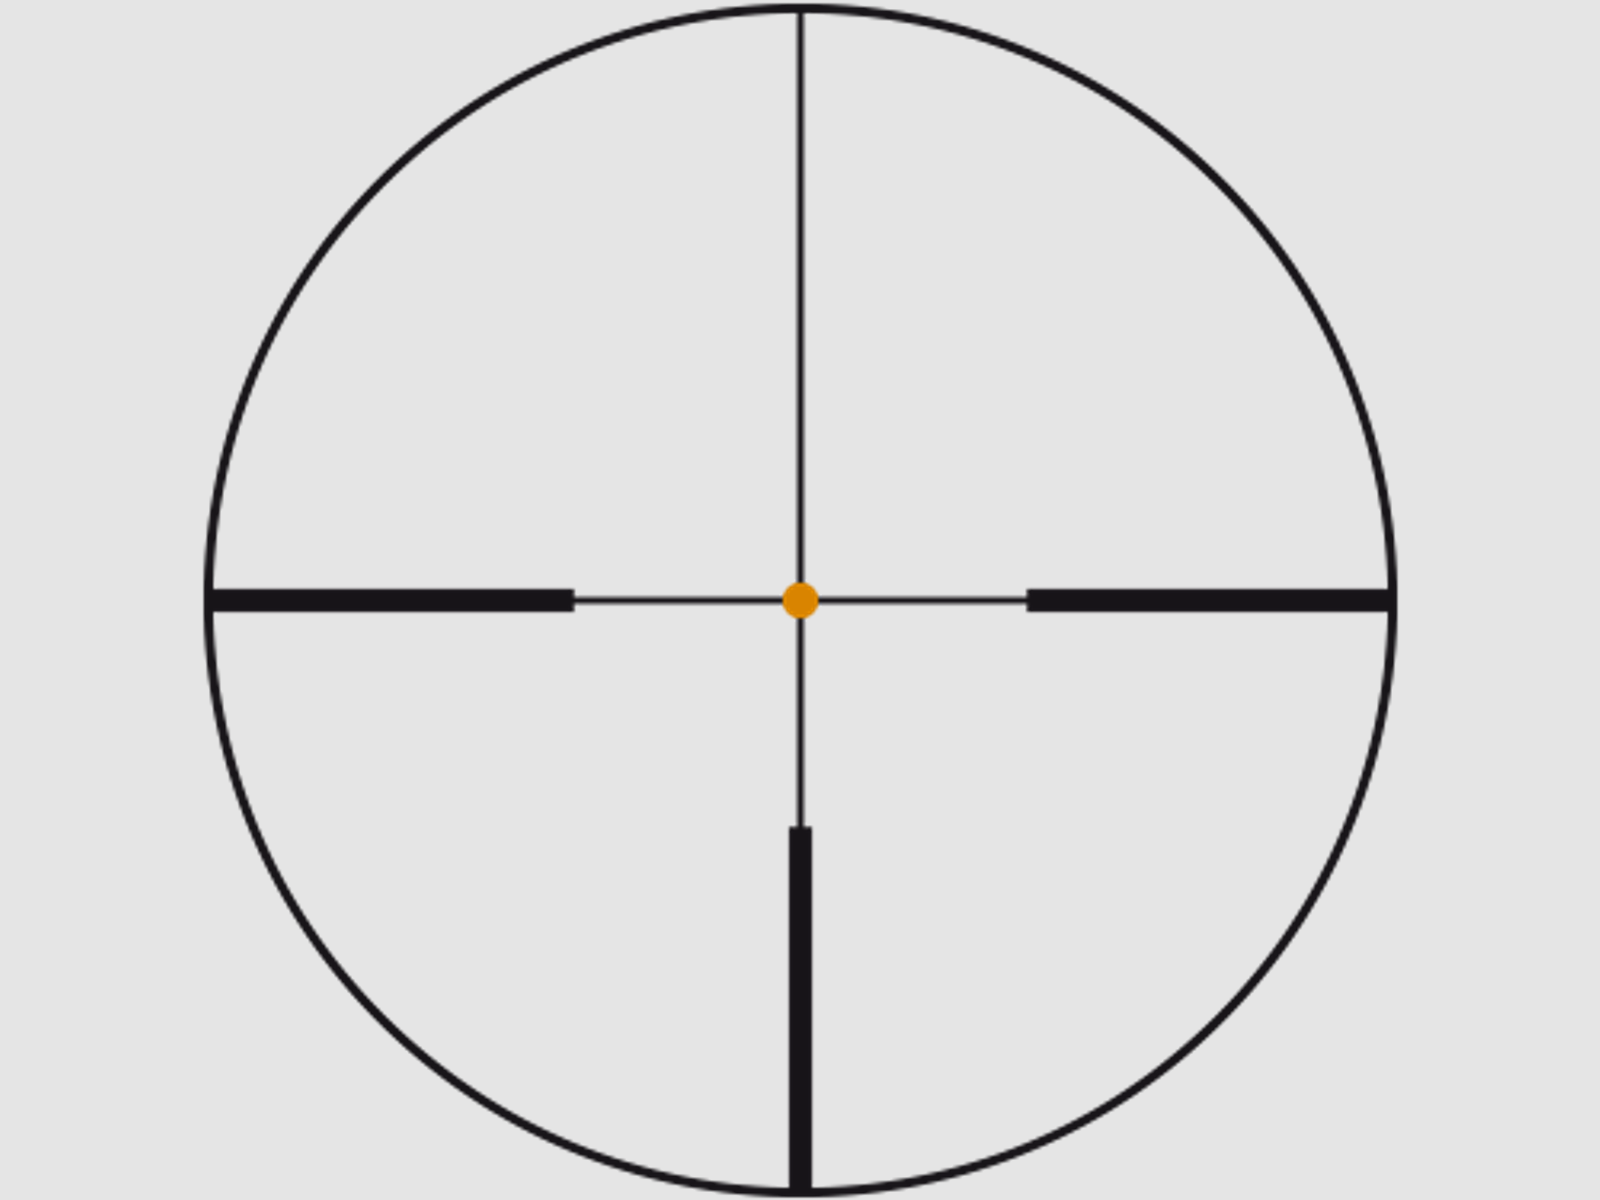 SWAROVSKI Zielfernrohr mit Leuchtabsehen 2,5-15x44 P BT Z6i L (30mm) II Abs. 4A-I